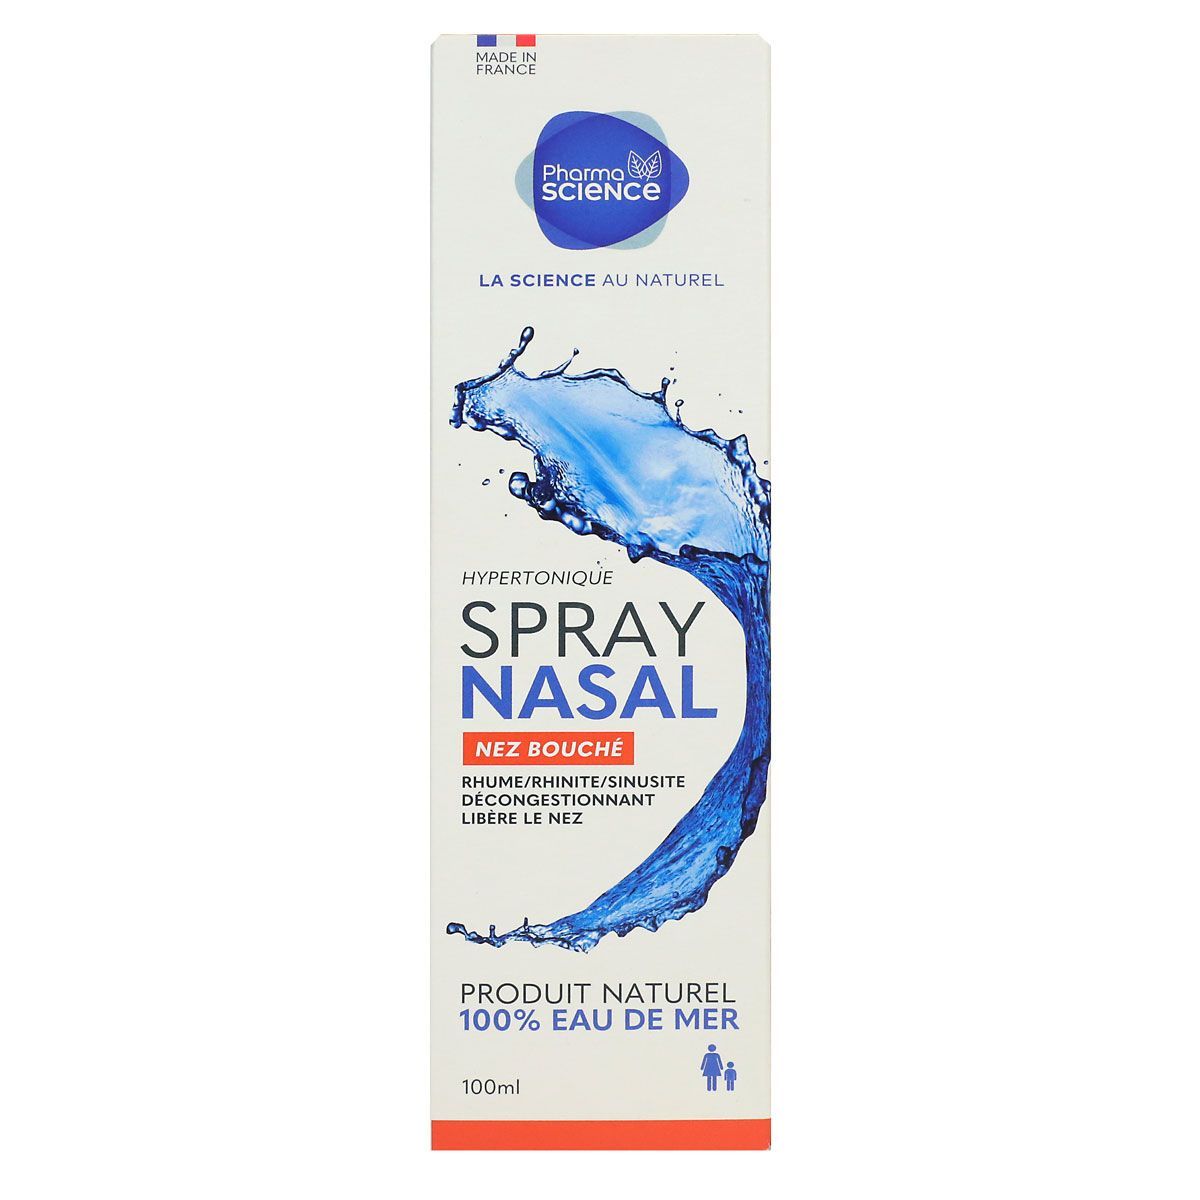 Spray nasal decongestionnant : Achat de spray pour déboucher le nez